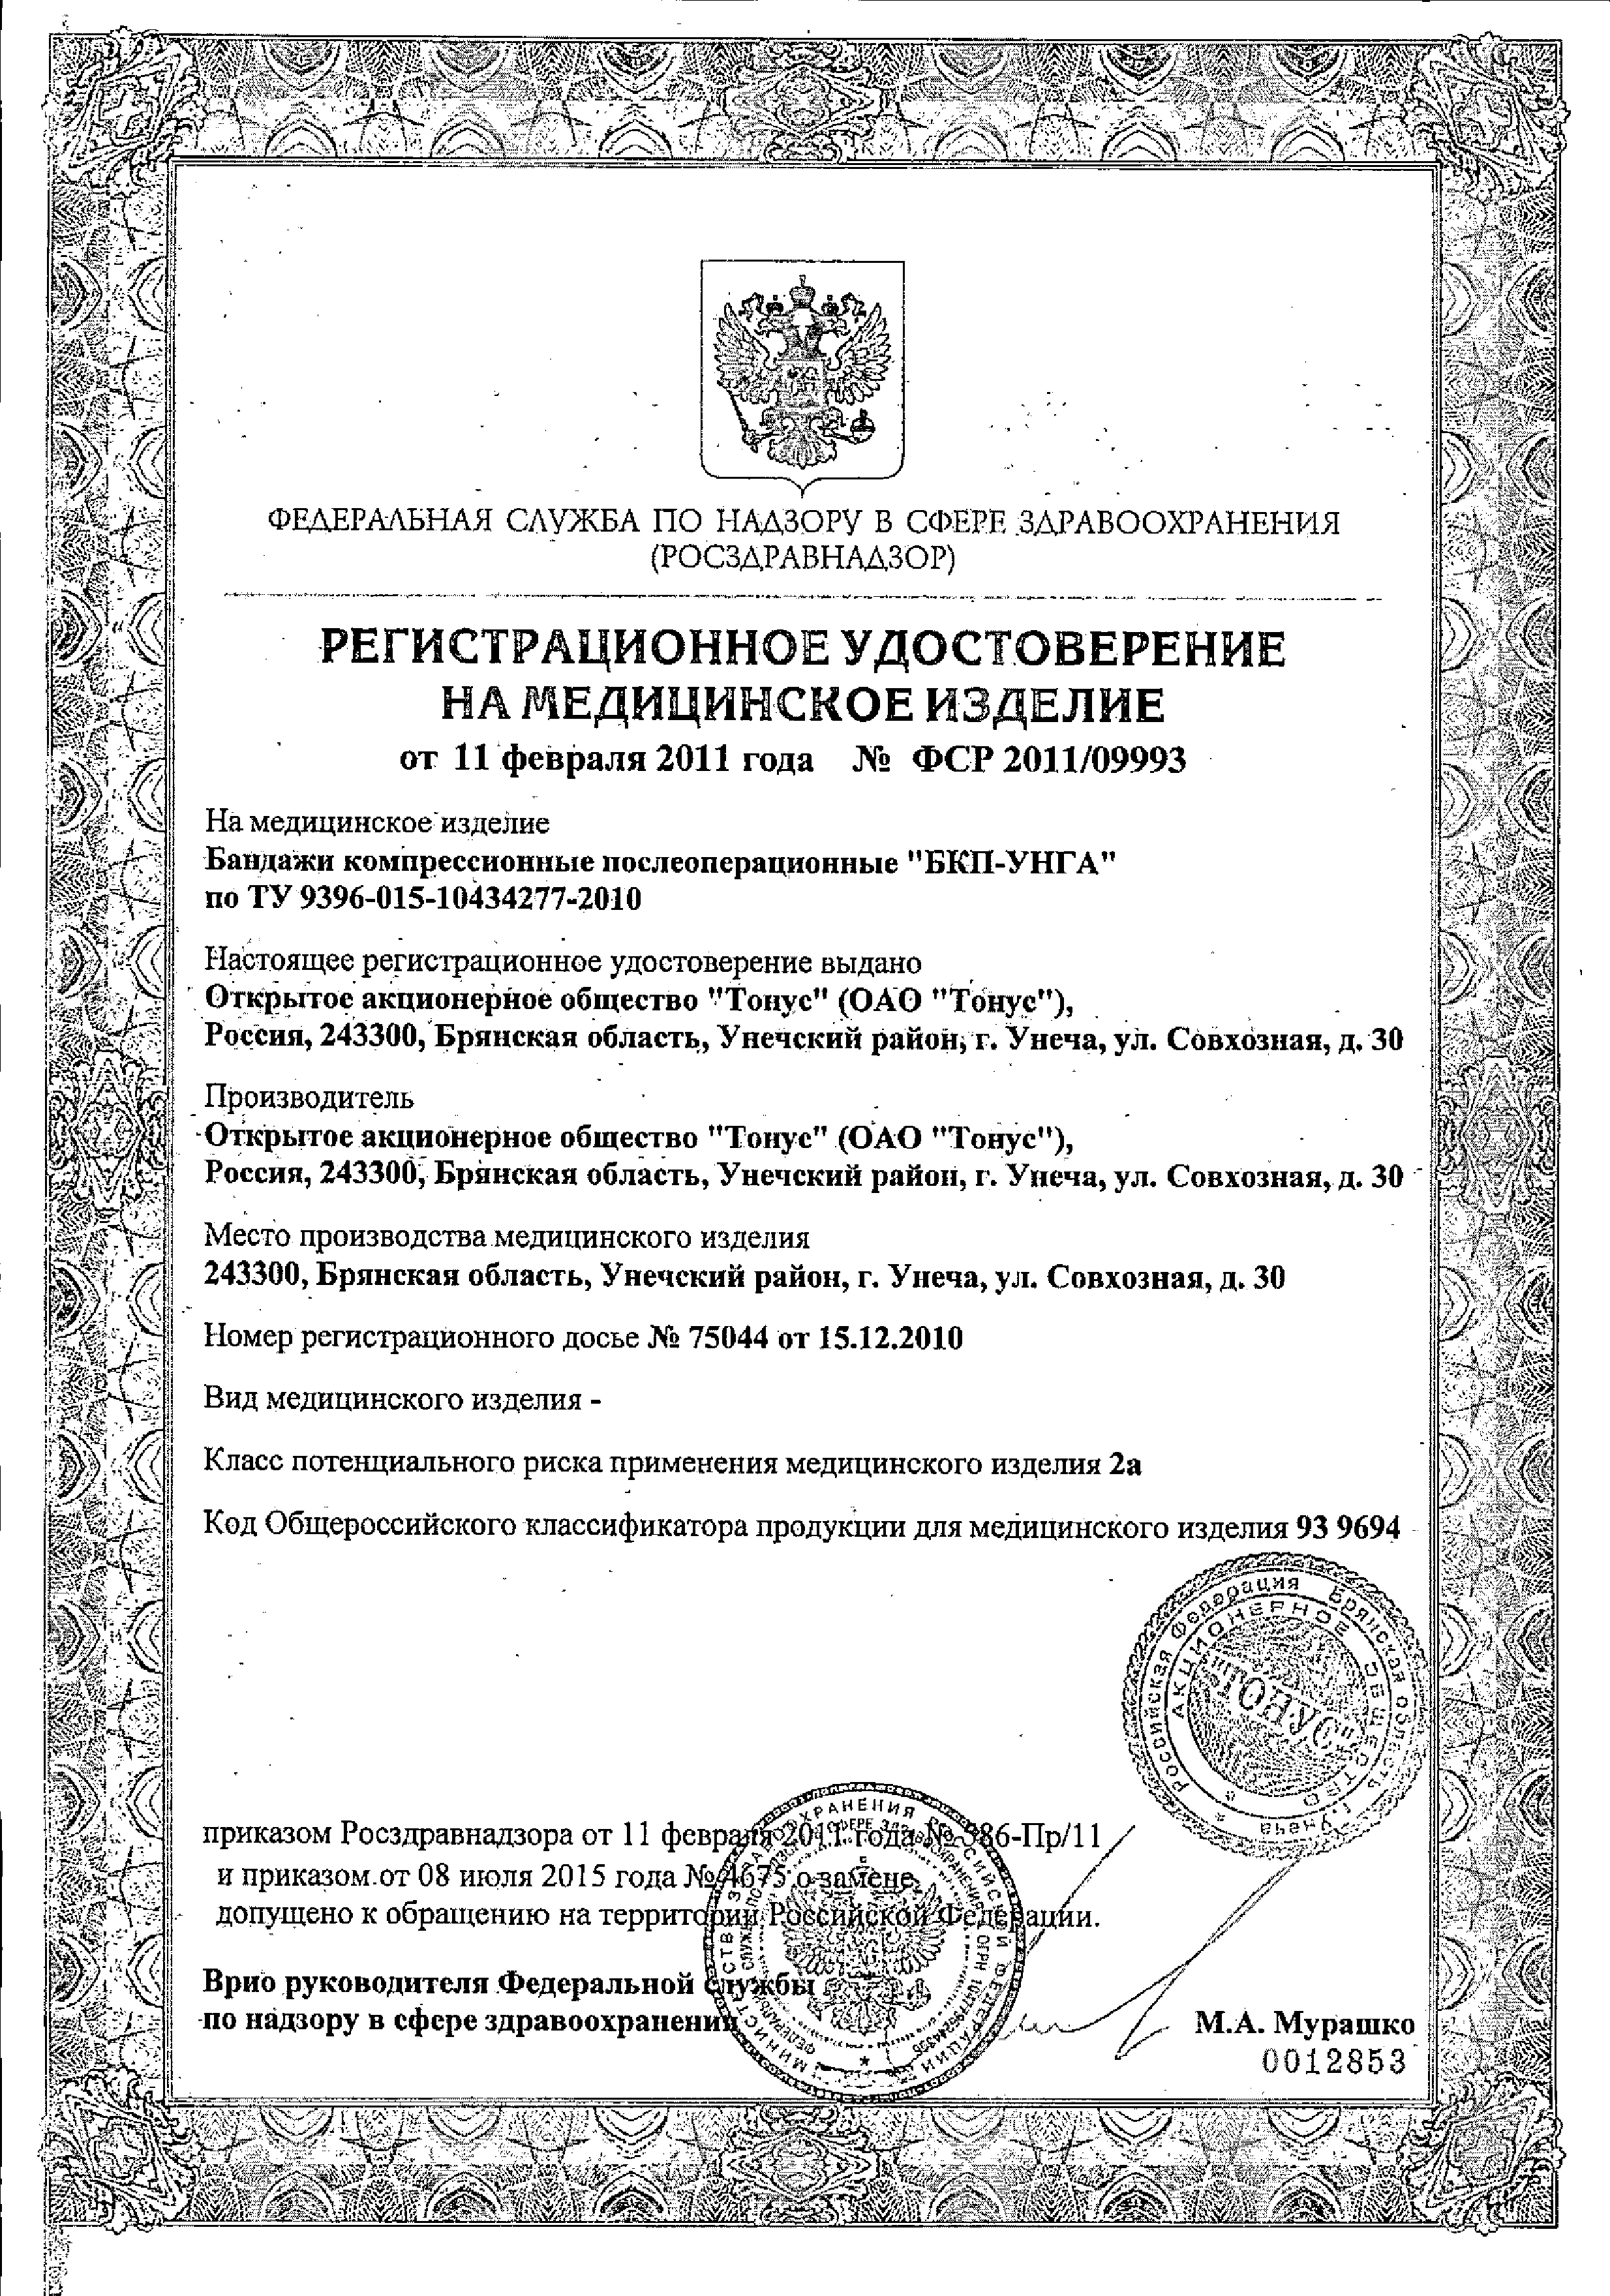 Унга Бандаж послеоперационный антимикробный сертификат